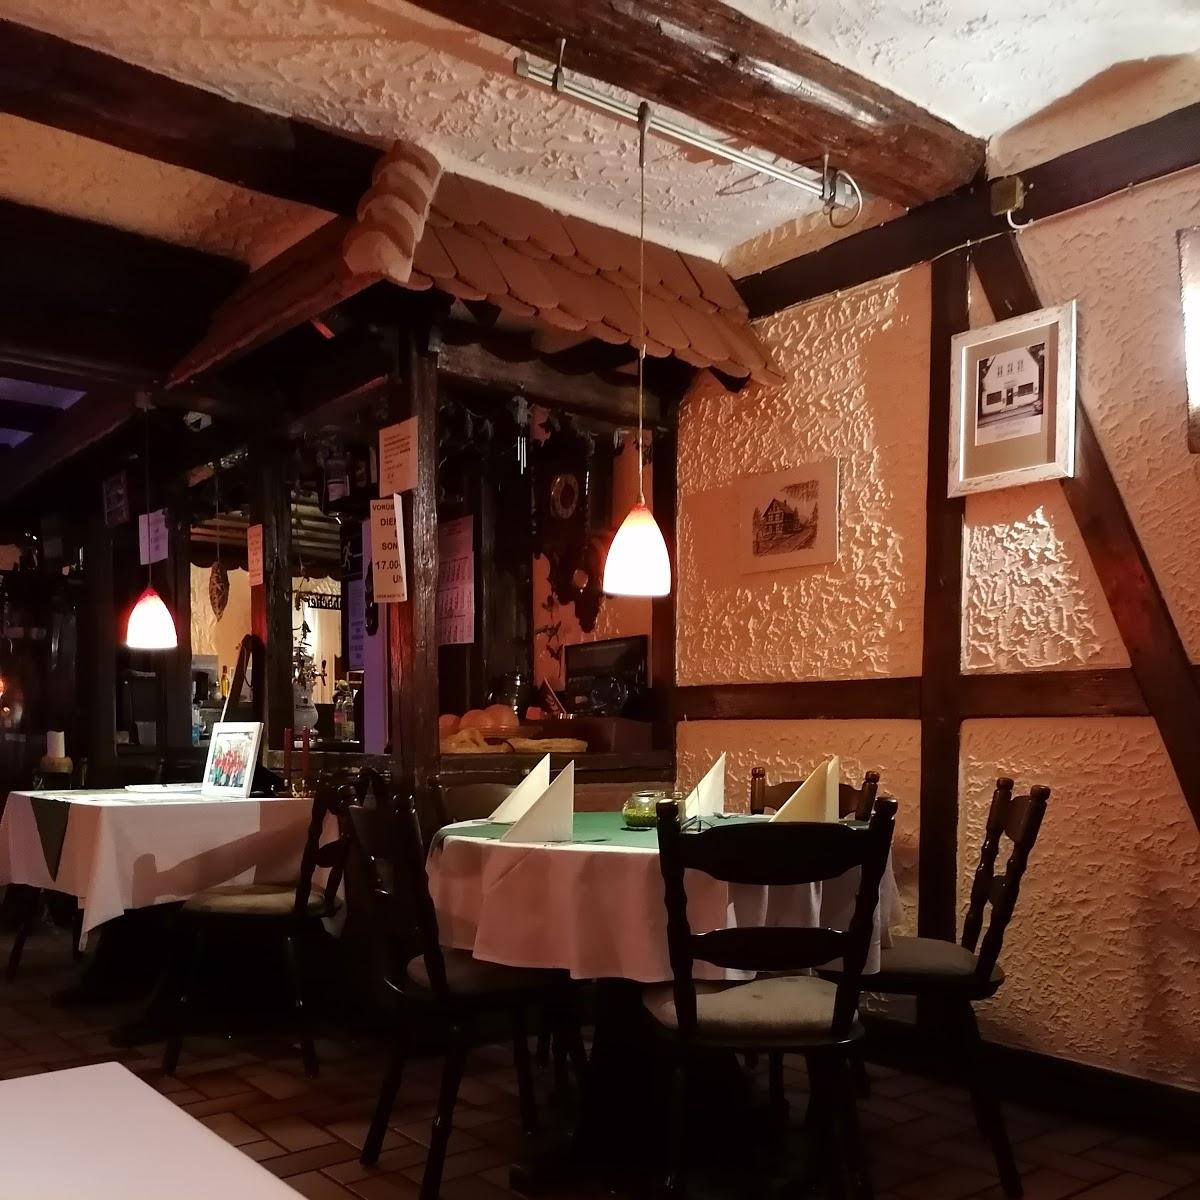 Restaurant "Capri" in Langelsheim